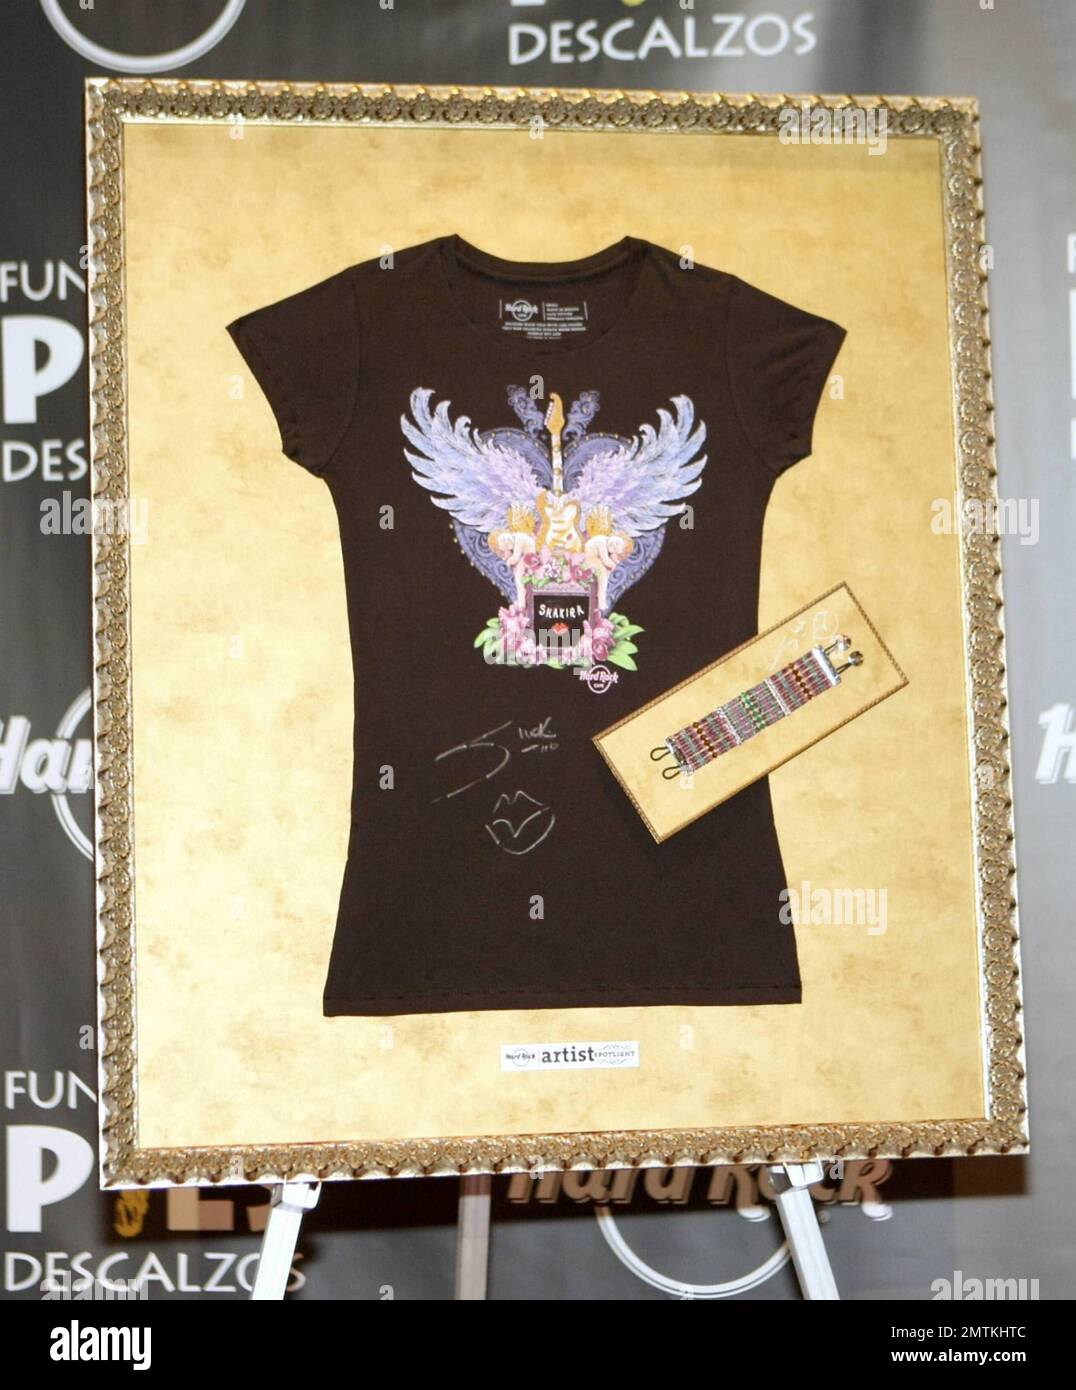 La pop star colombiana Shakira svela il merchandise dell'artista Shakira di Hard  Rock International all'Hard Rock Cafe di Washington, D.C. I prodotti in  edizione limitata includono una t-shirt disegnata dalla superstar e